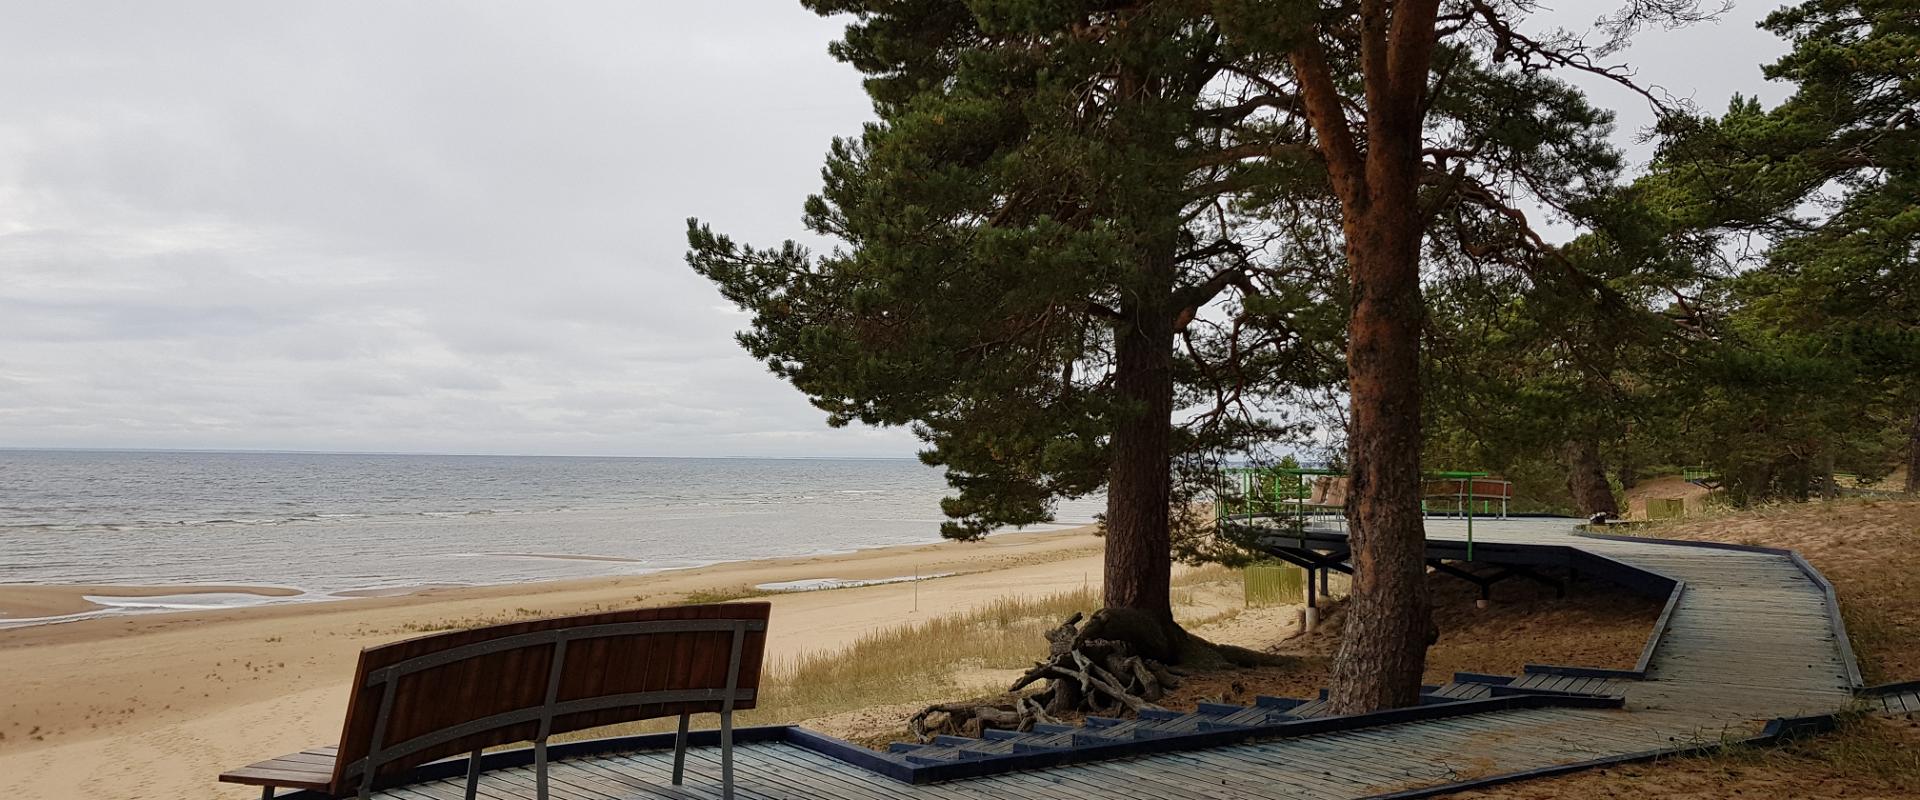 Erholungsgebiet am Nordufer des Peipus-Sees und das Besucherzentrum Kauksi (dt. Kauks)